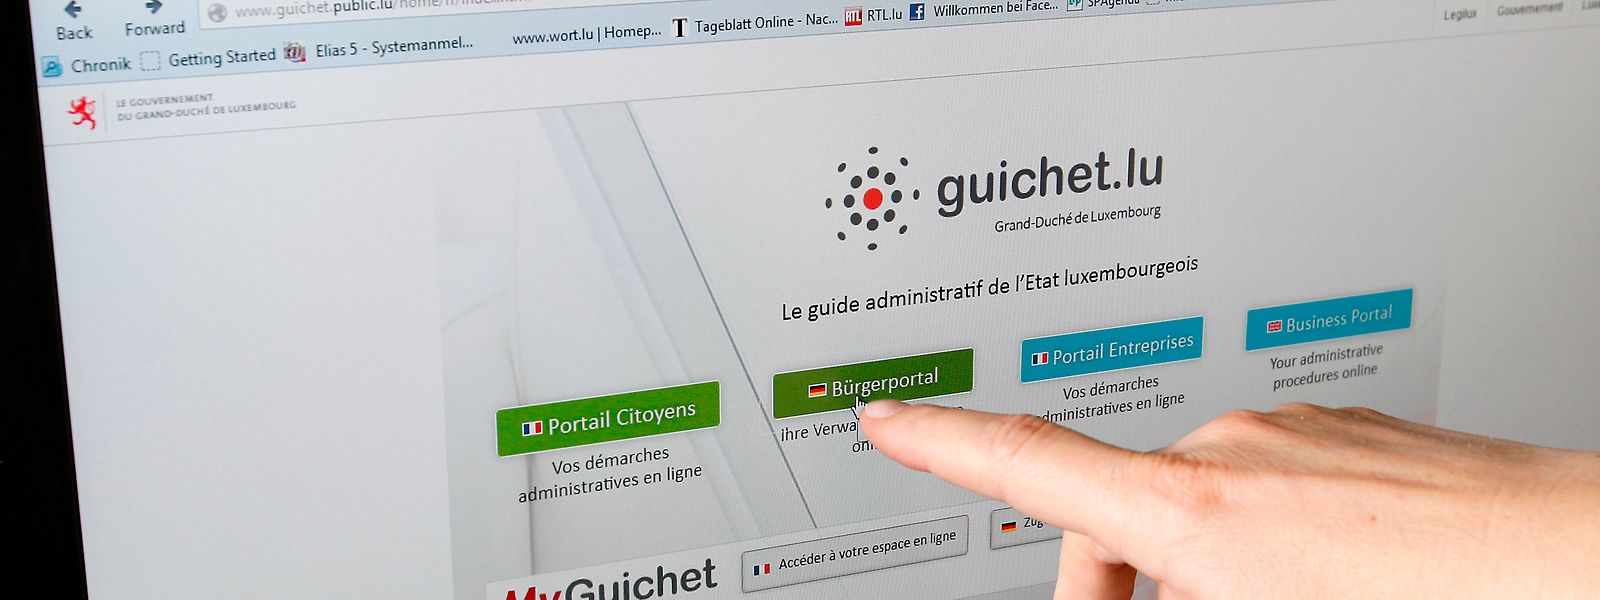 Le site guichet.lu a été lancé dès 2014. Son design a depuis évolué. 